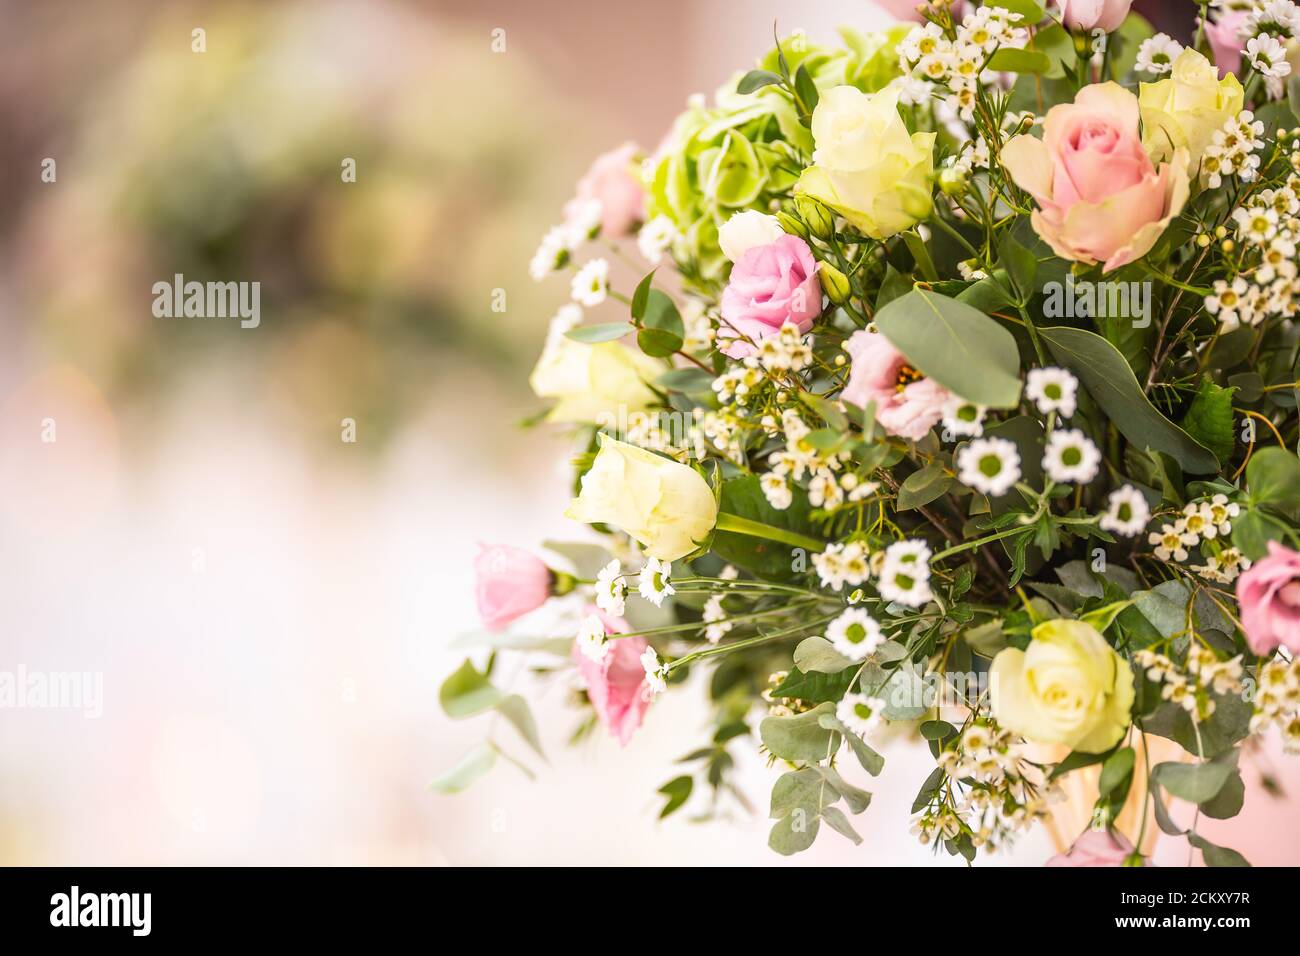 Détail d'un bouquet de fleurs de mariage avec roses roses situées sur le côté droit de l'image Banque D'Images